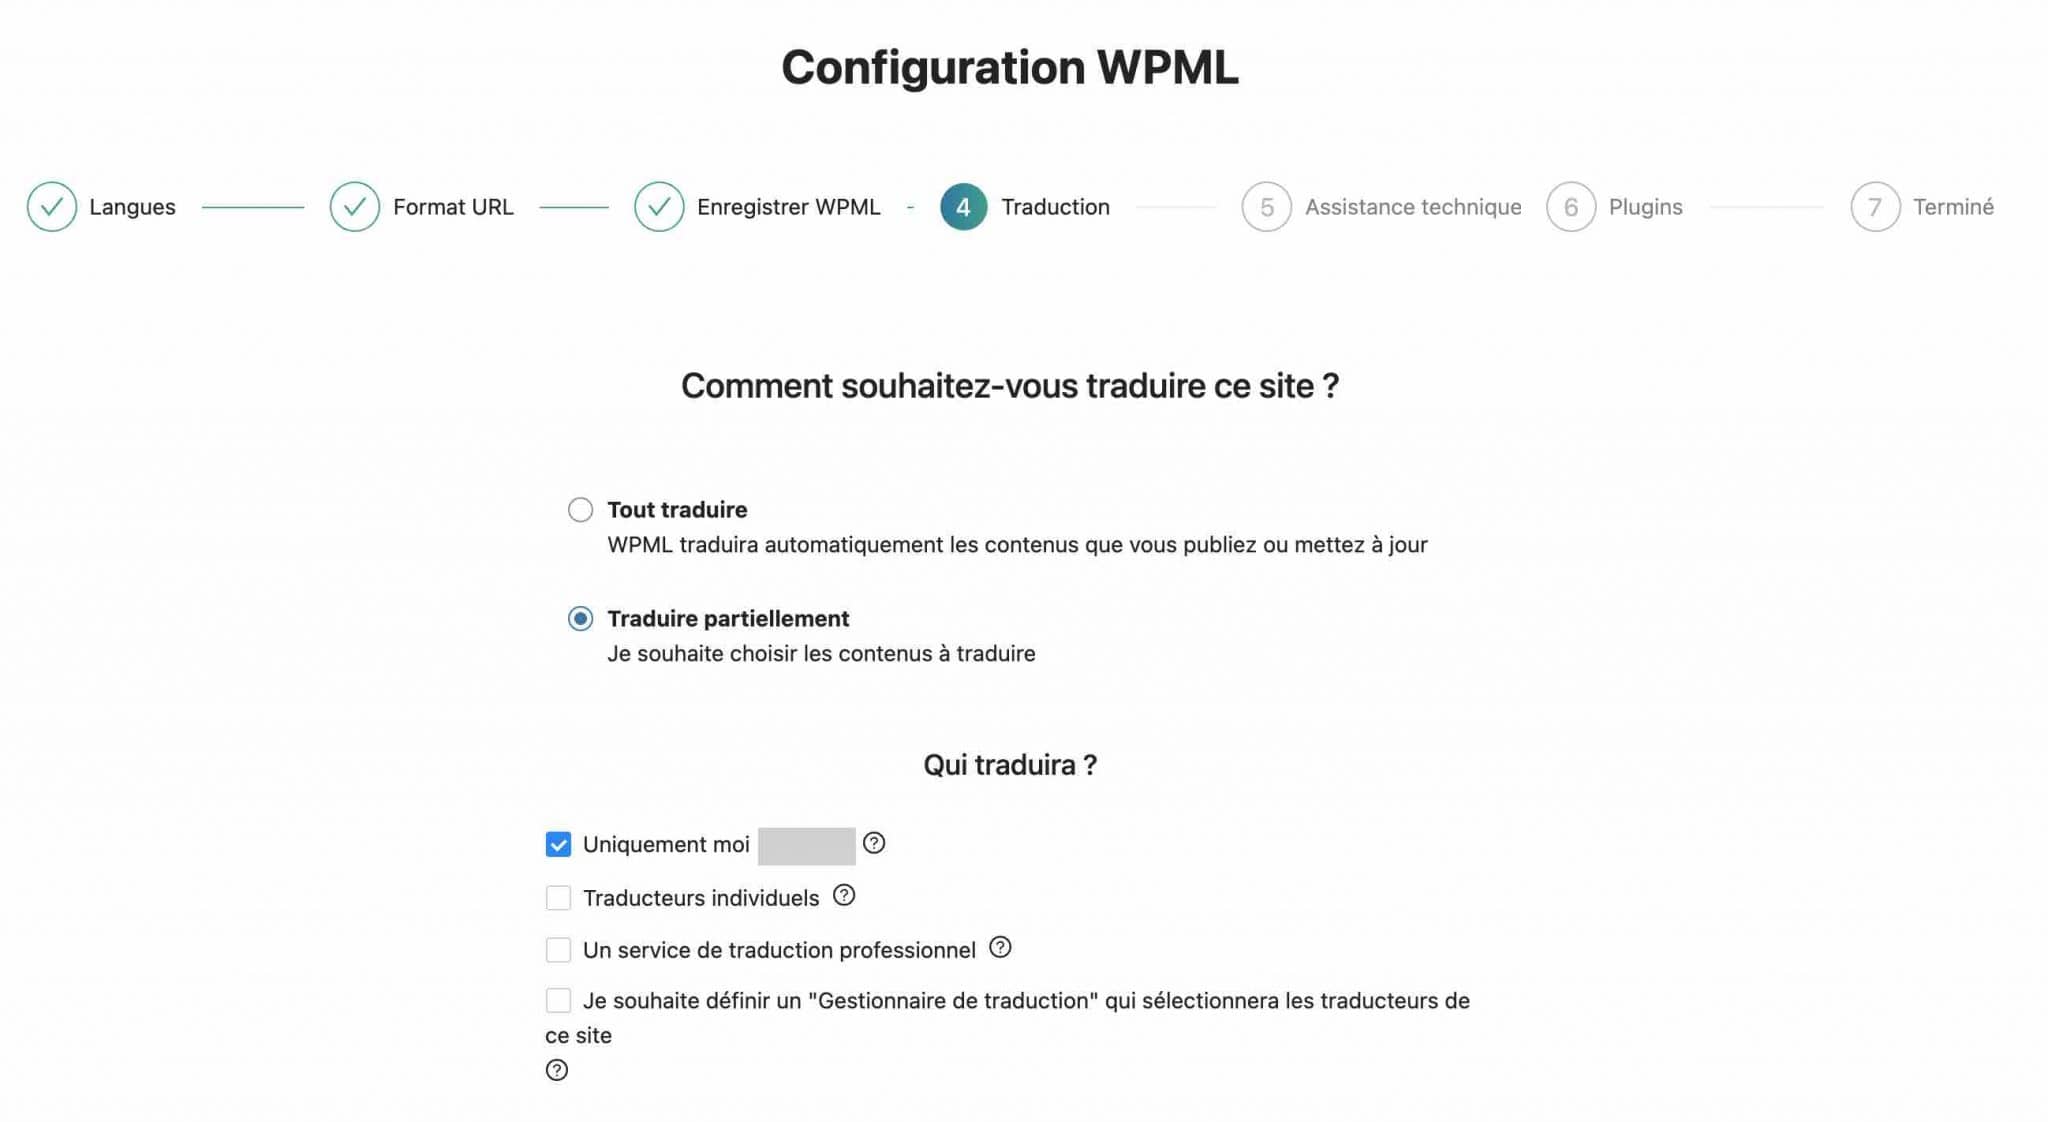 WPML propose différents modes de traduction.